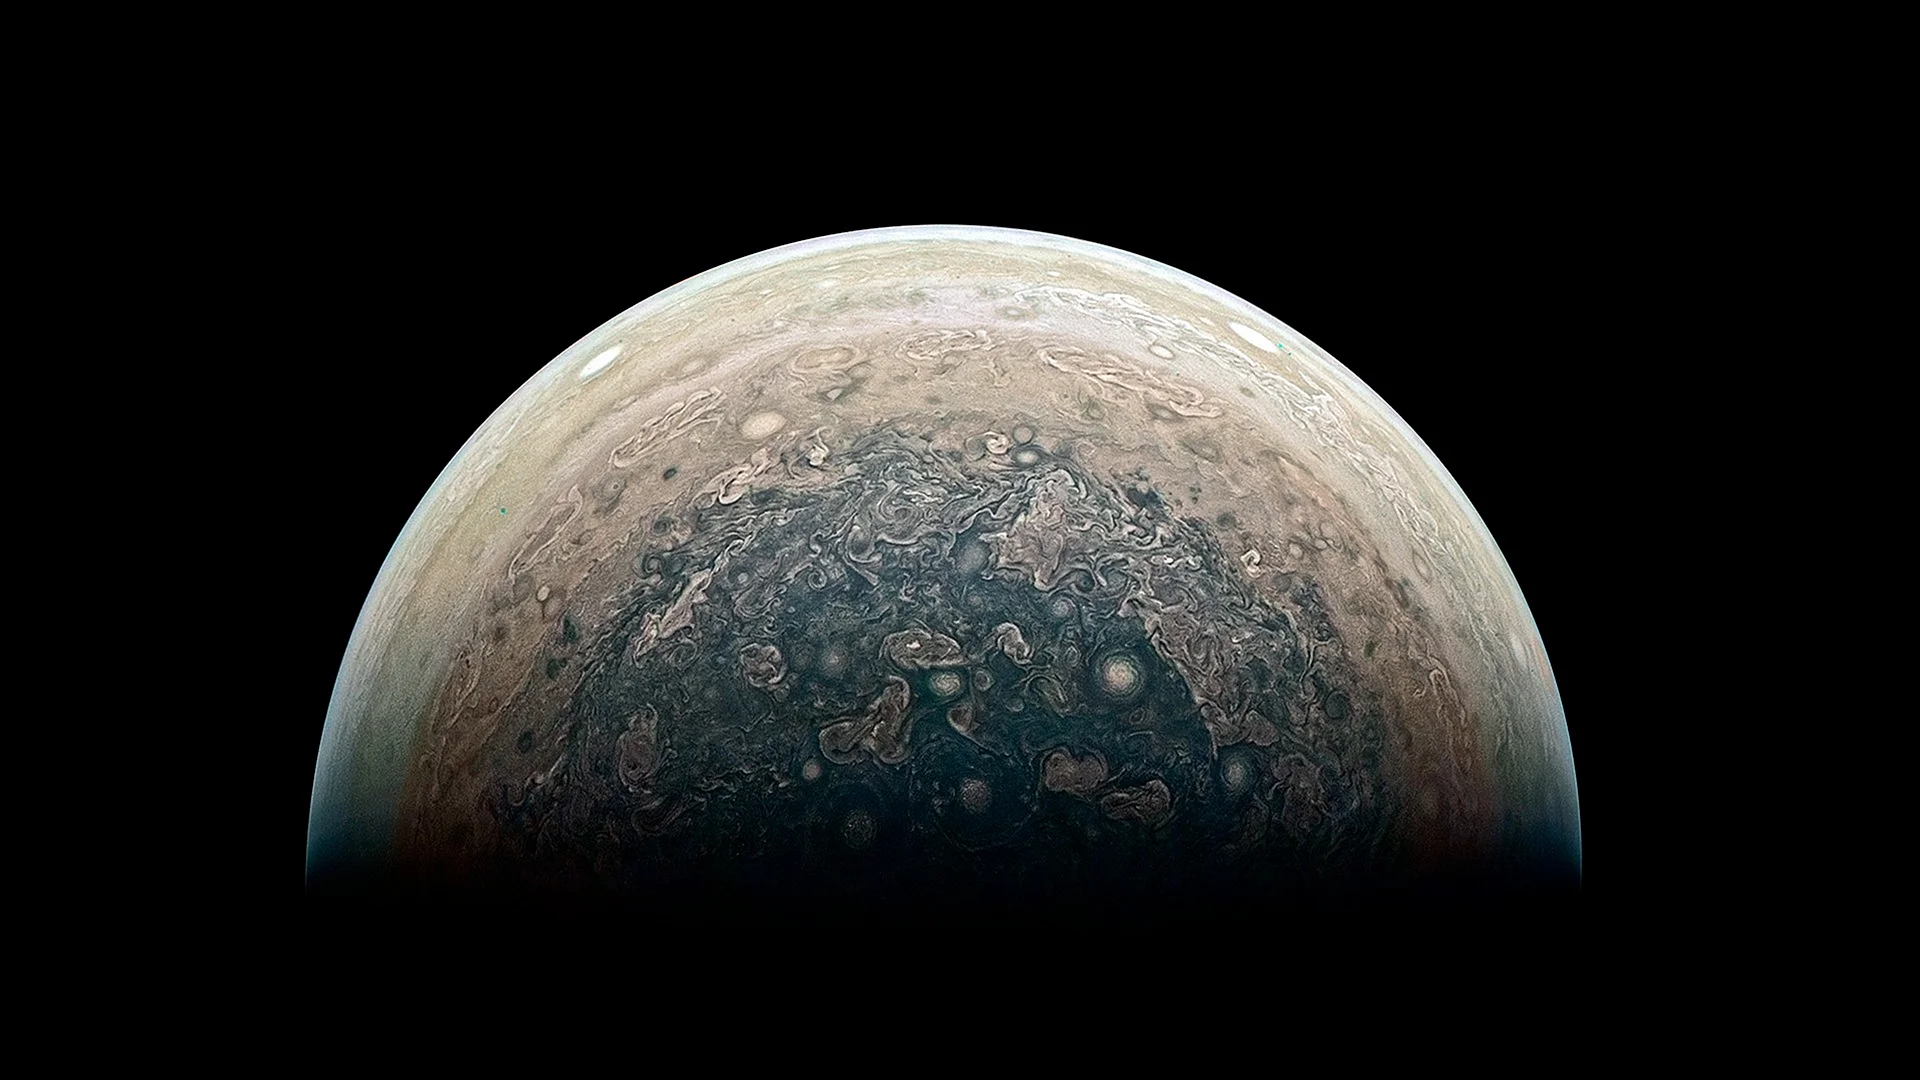 Jupiter 4k Wallpaper